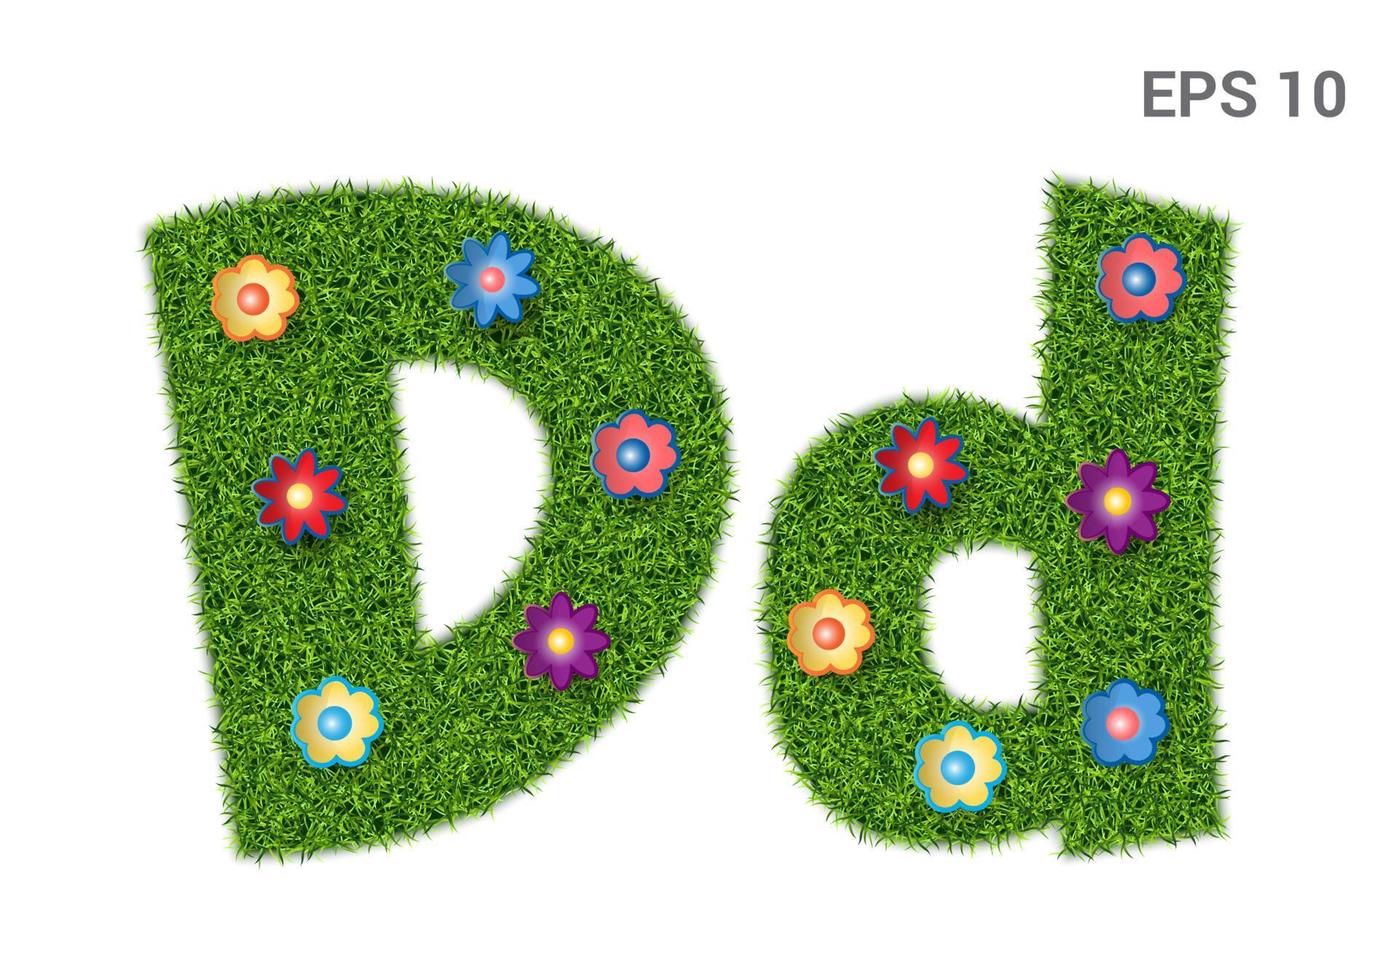 dd - majuscules et majuscules de l'alphabet avec une texture d'herbe. pelouse mauresque fleurie. isolé sur fond blanc. illustration vectorielle vecteur